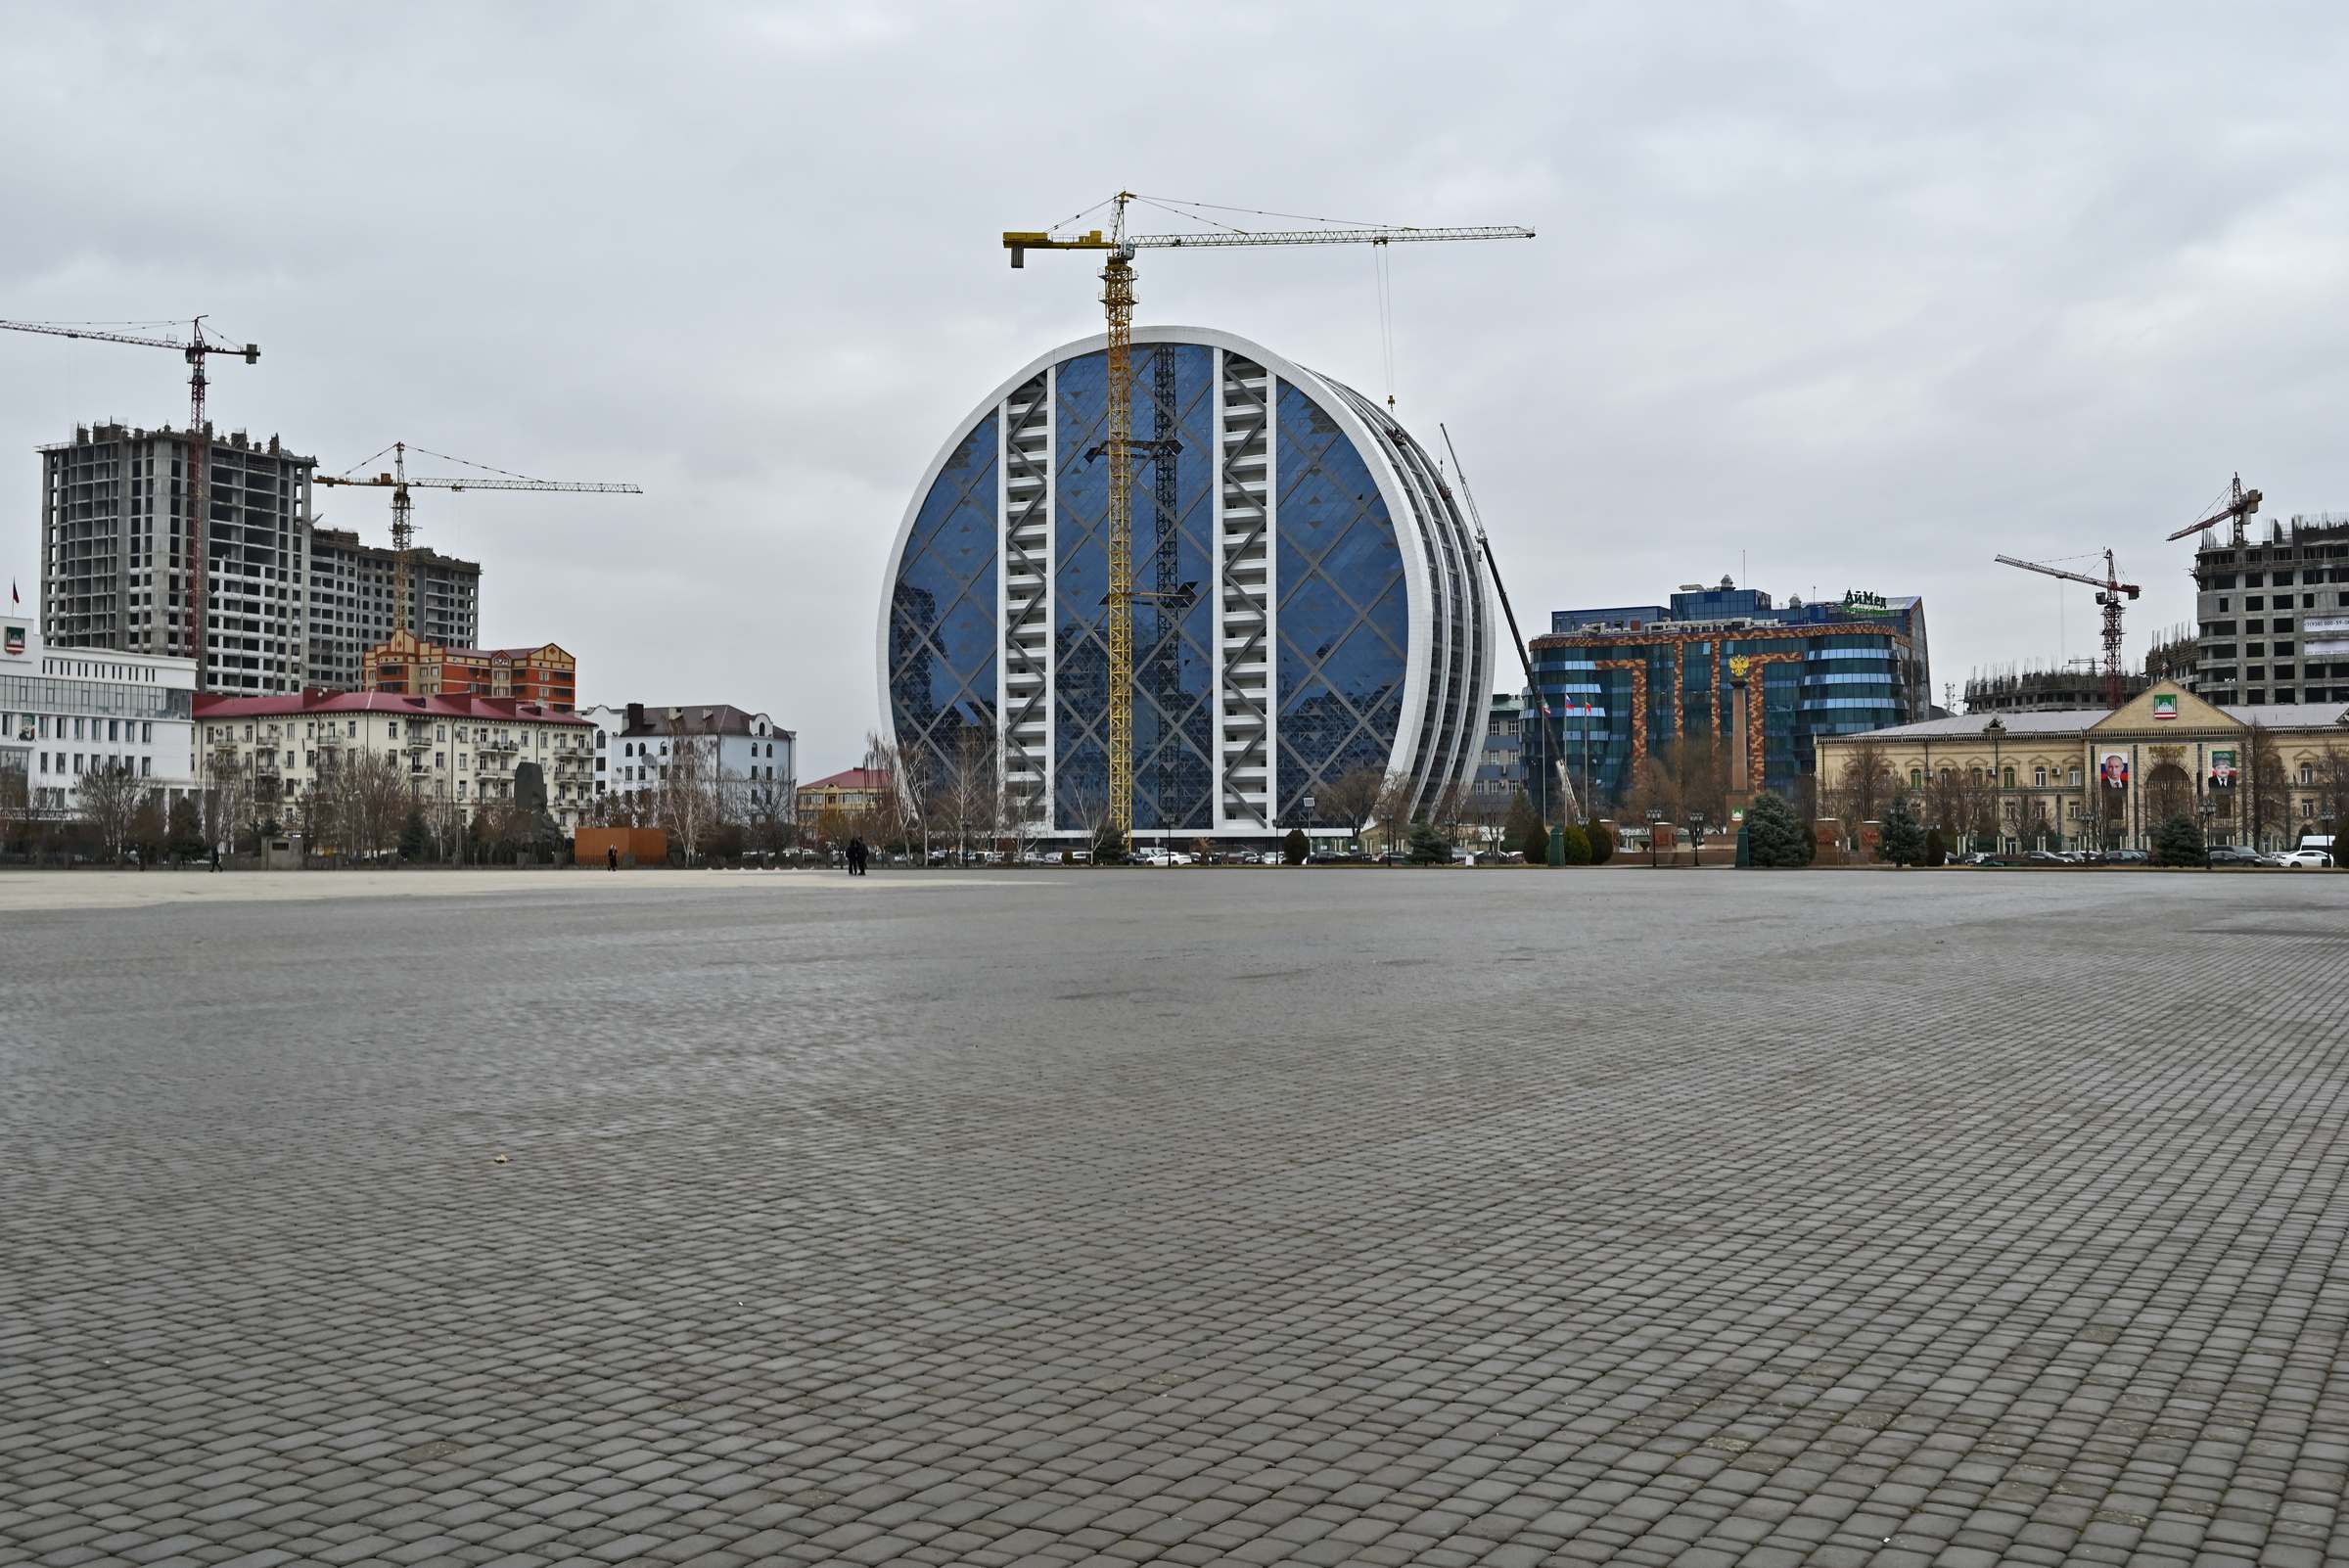 Площадь Ахмата Кадырова